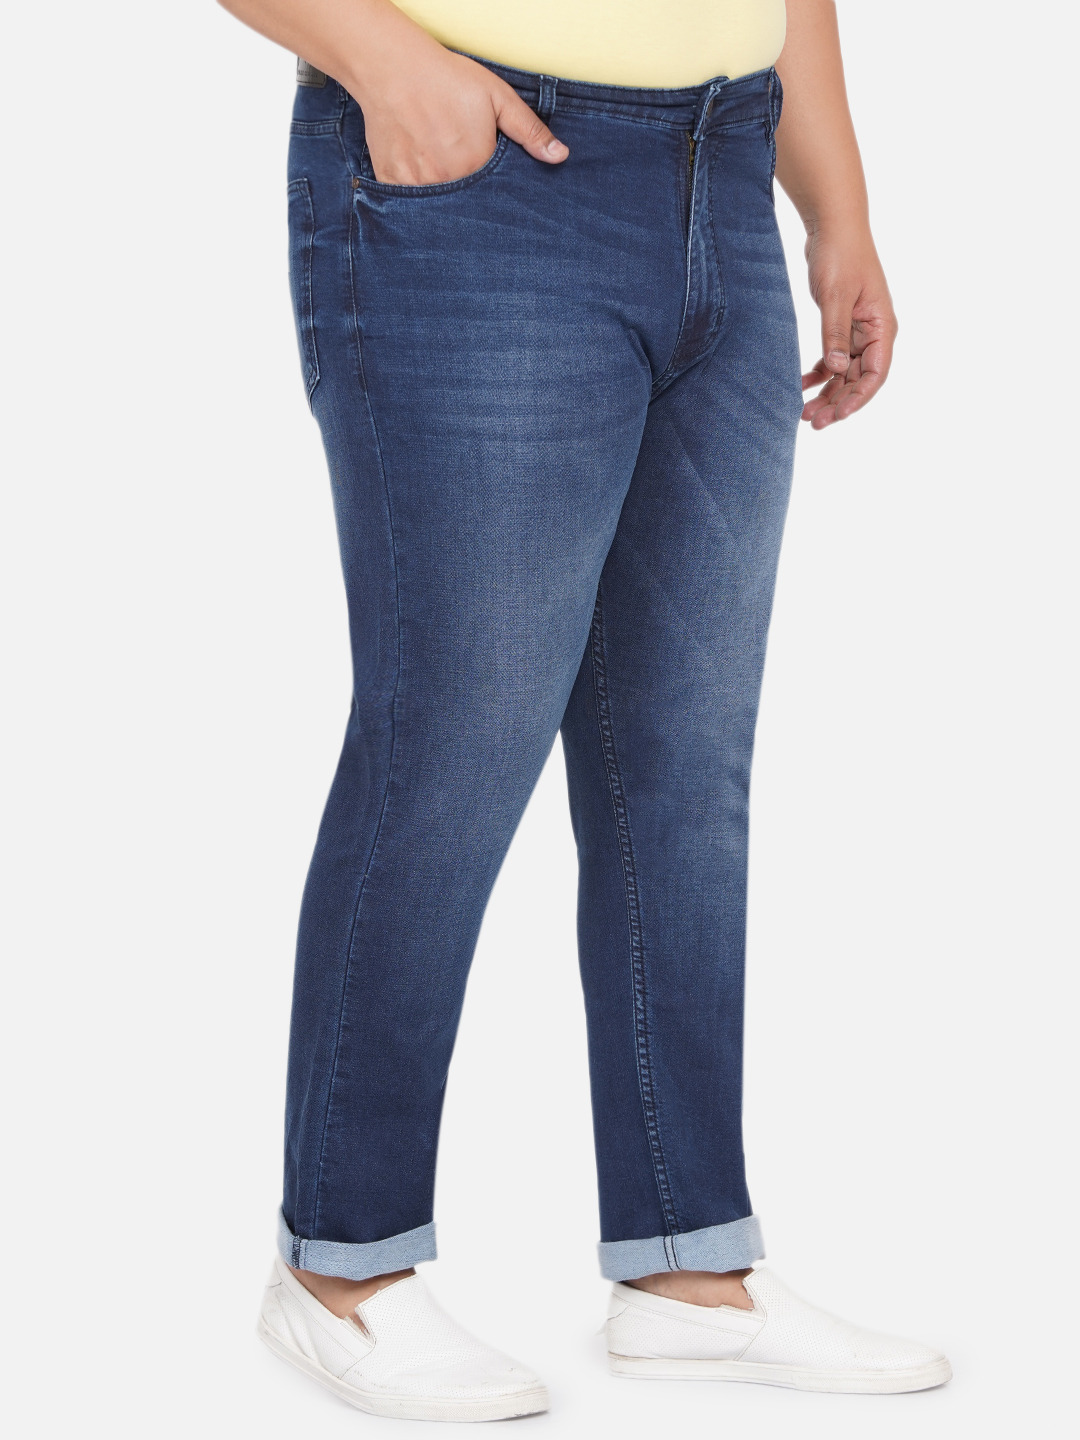 bottomwear/jeans/BEPLJP28165/bepljp28165-3.jpg